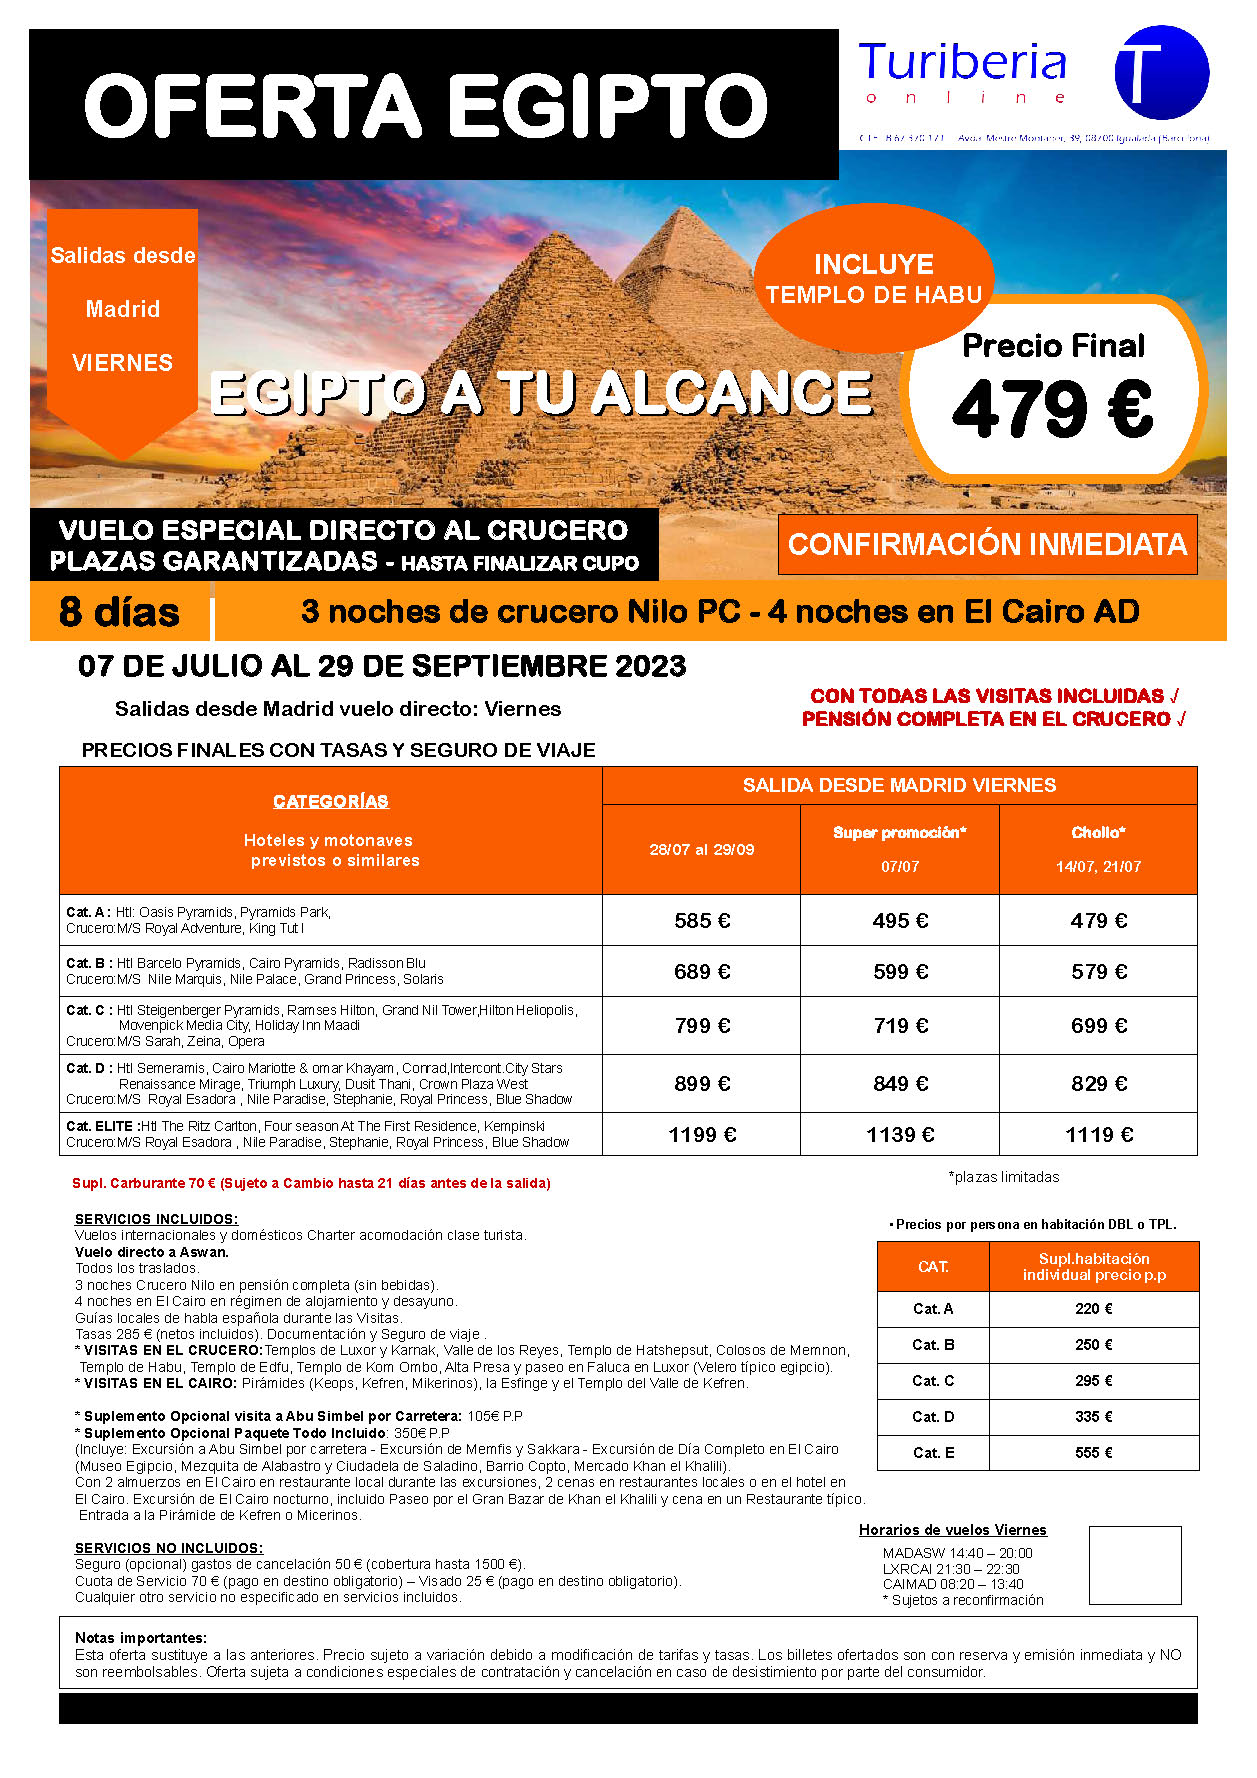 Ofertas Turiberia Julio a Septiembre 2023 Egipto a tu Alcance 8 dias salida en vuelo especial directo desde Madrid